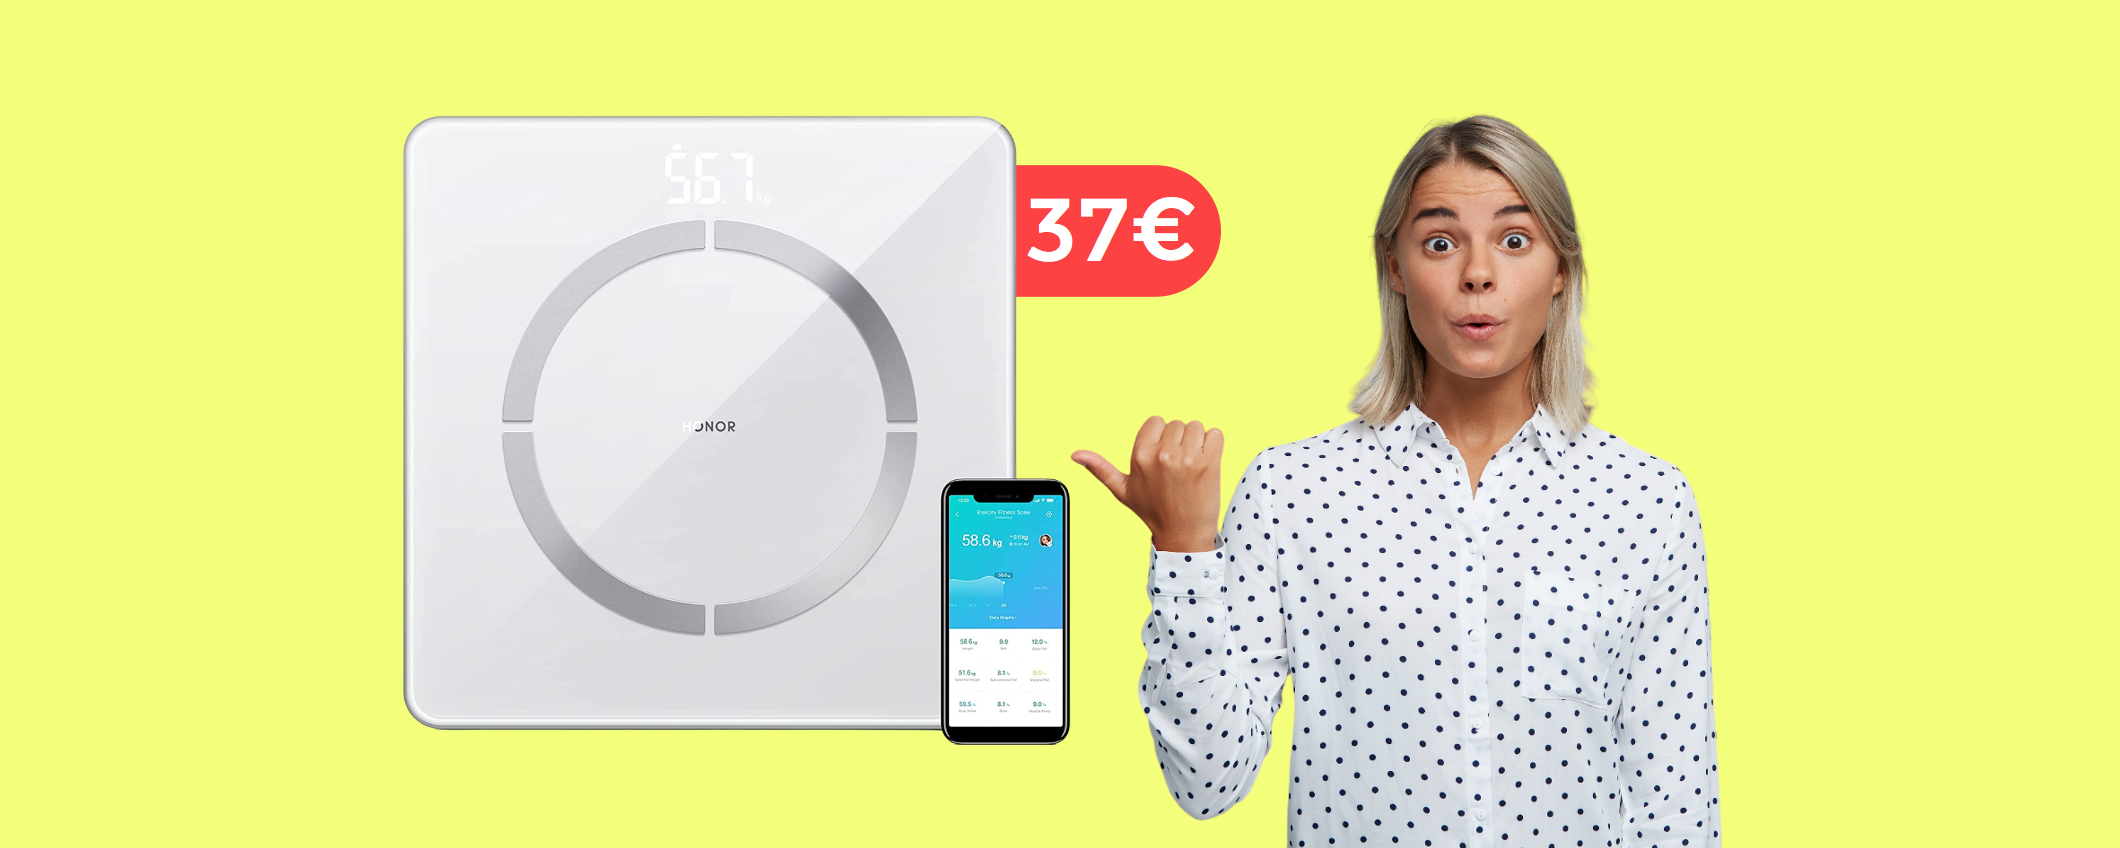 Bilancia Honor, statistiche e peso direttamente sull'app: oggi a 37€